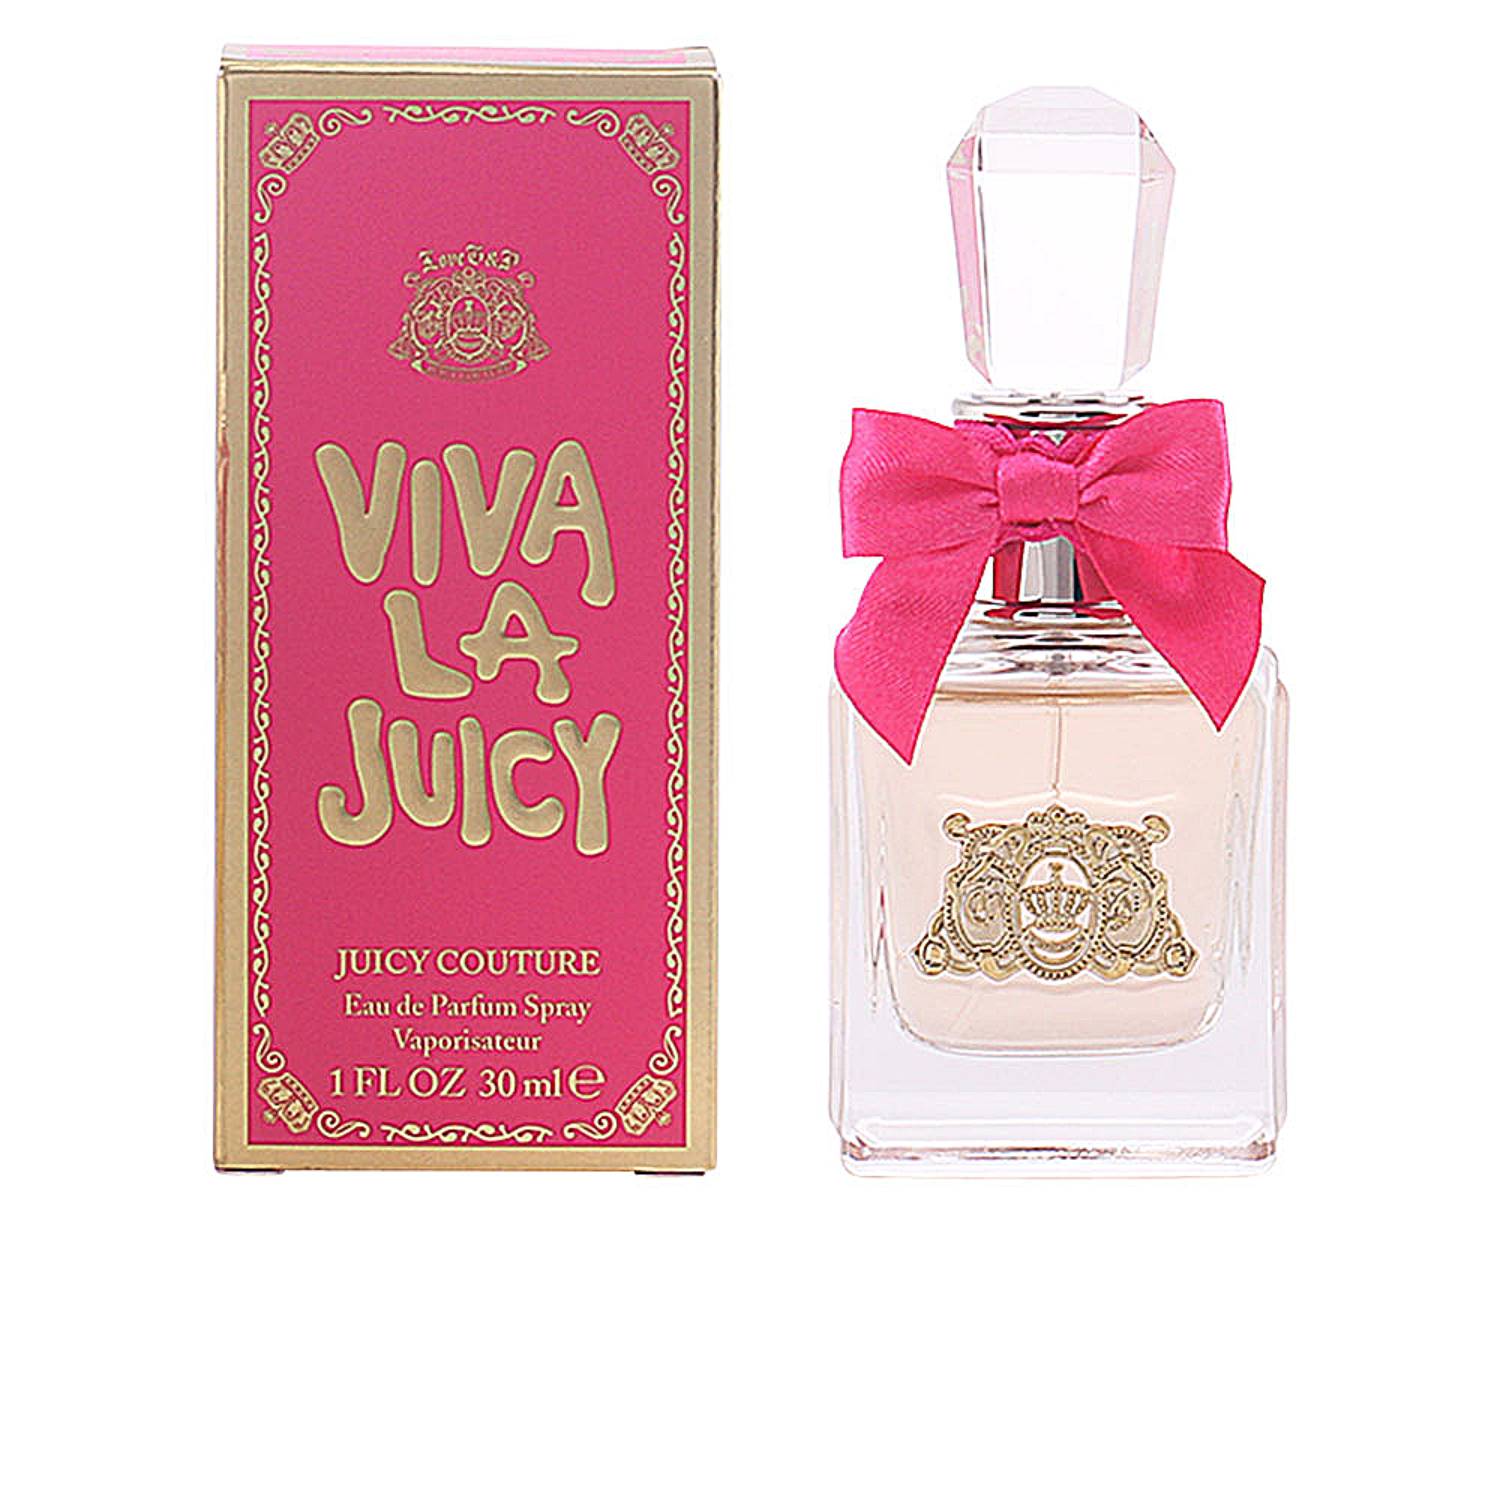 VIVA LA JUICY Eau de Parfum Spray